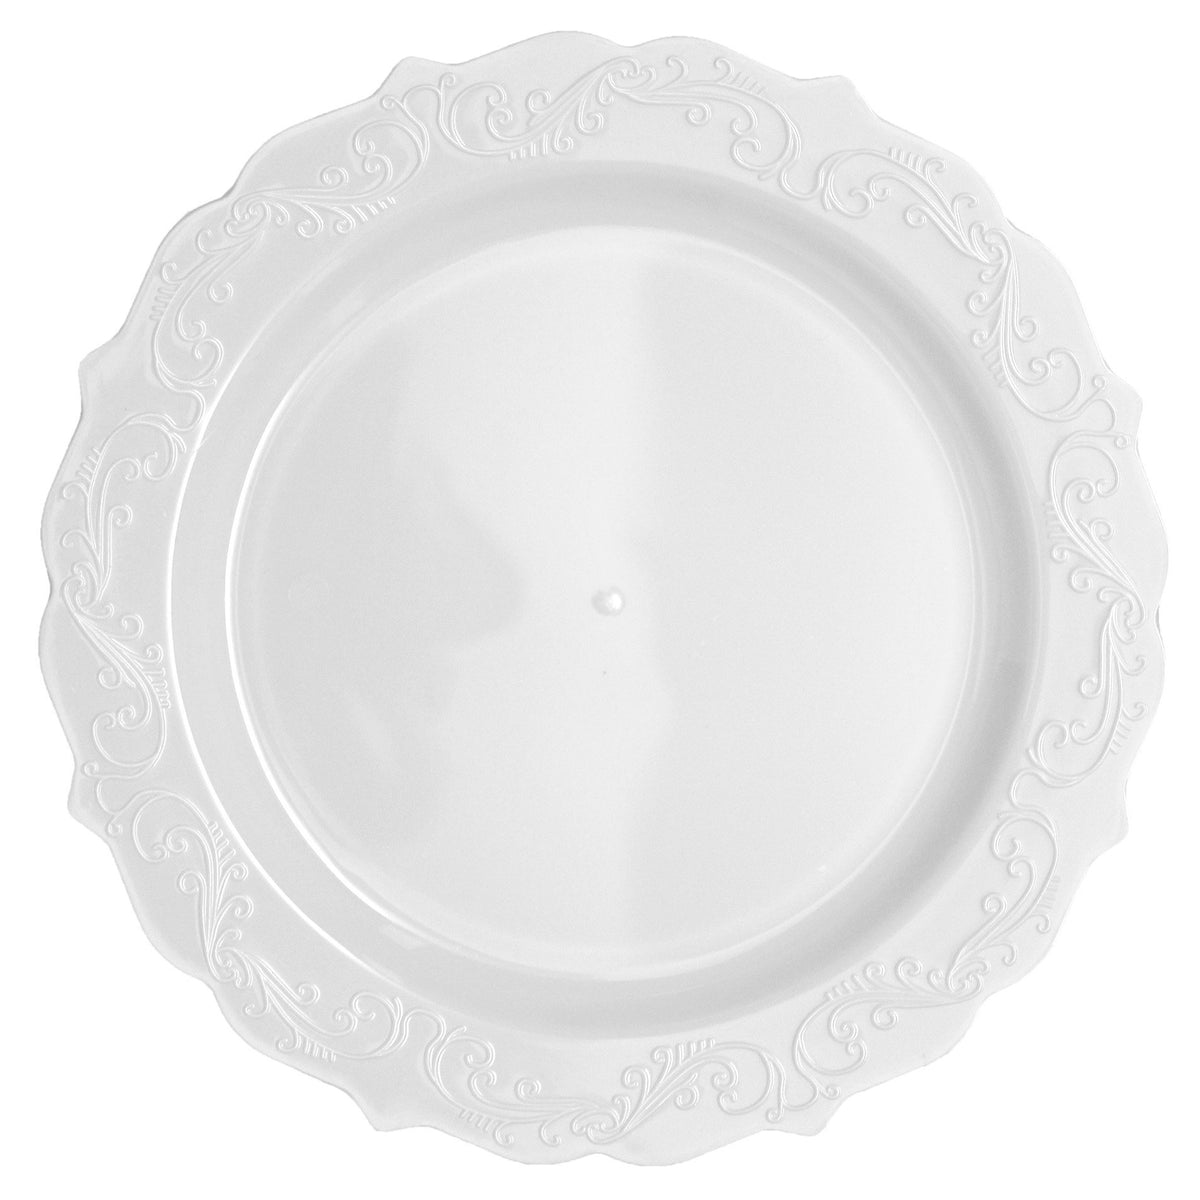 Disposable Plates - Plastic, Fancy Plates